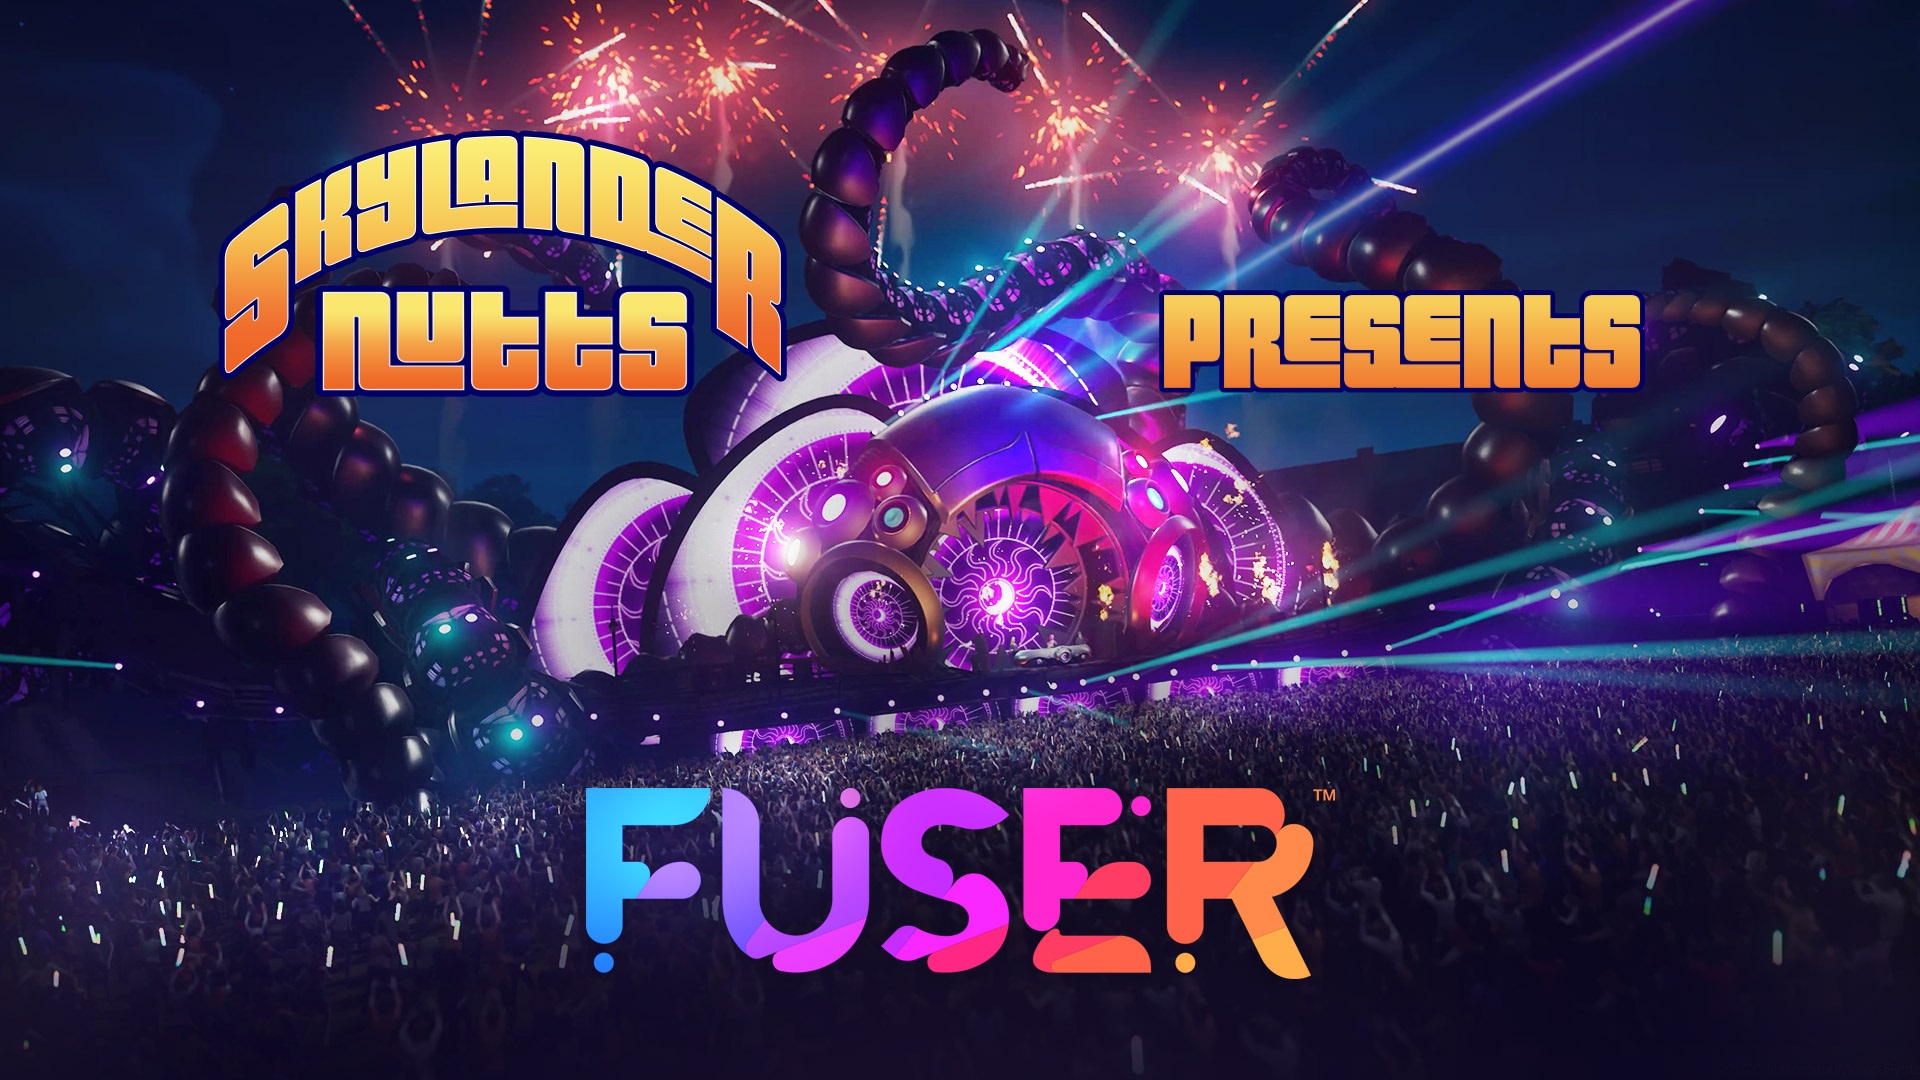 SkylanderNutts Presents Fuser